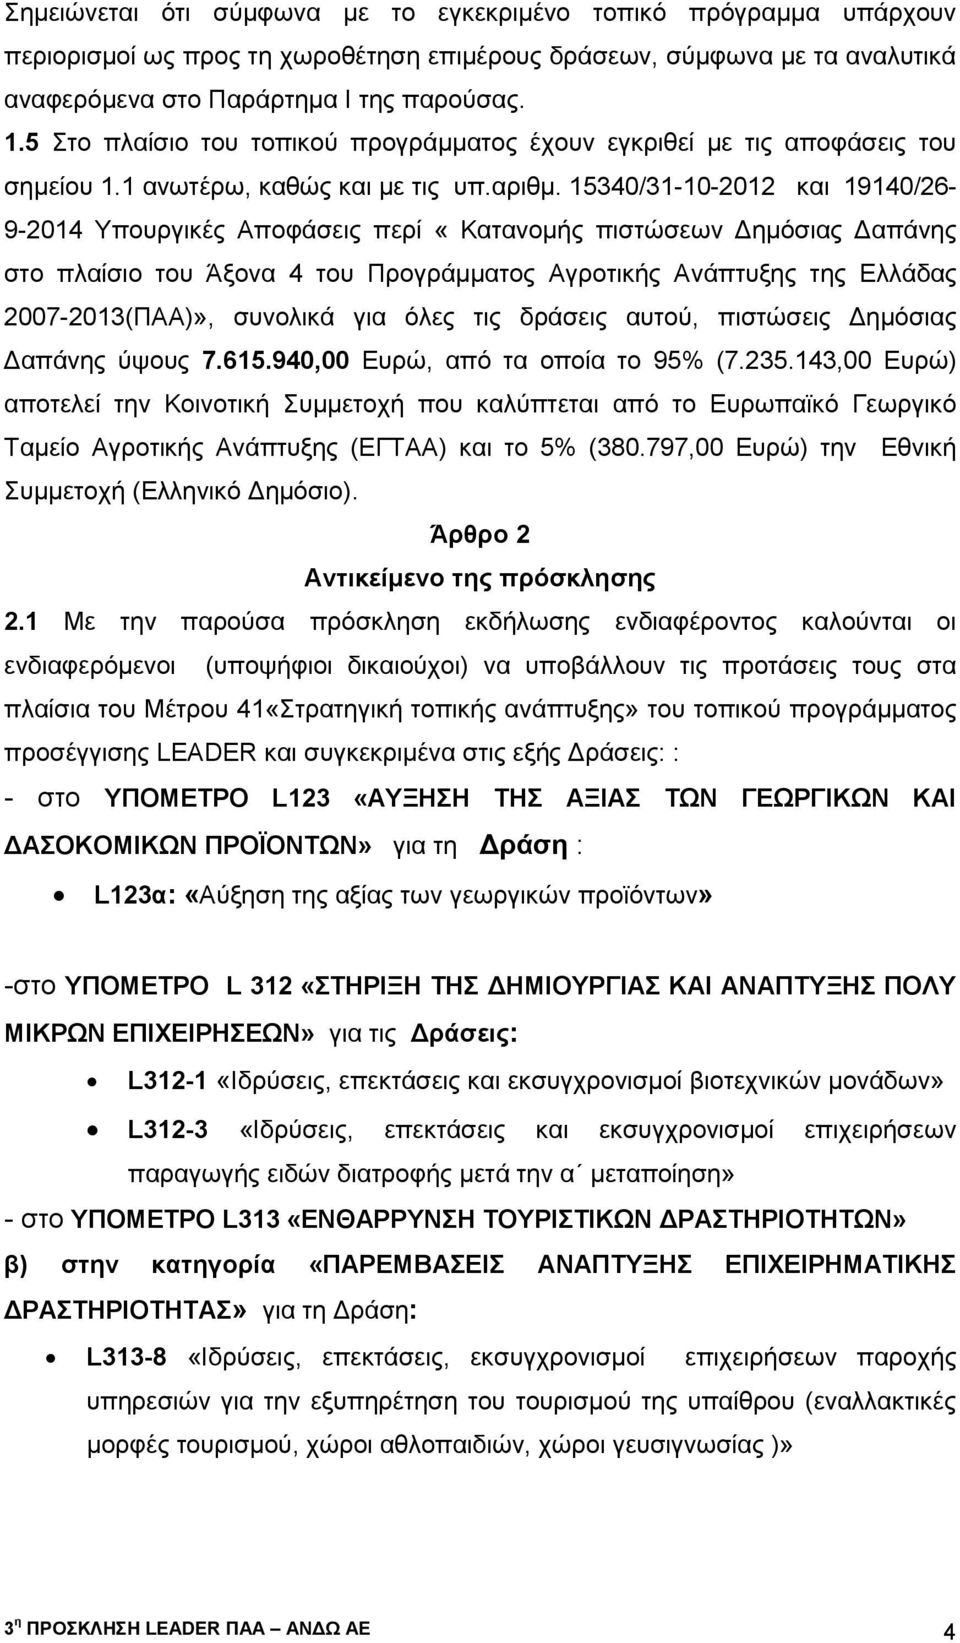 15340/31-10-2012 και 19140/26-9-2014 Υπουργικές Αποφάσεις περί «Κατανοµής πιστώσεων Δημόσιας Δαπάνης στο πλαίσιο του Άξονα 4 του Προγράμματος Αγροτικής Ανάπτυξης της Ελλάδας 2007-2013(ΠΑΑ)», συνολικά